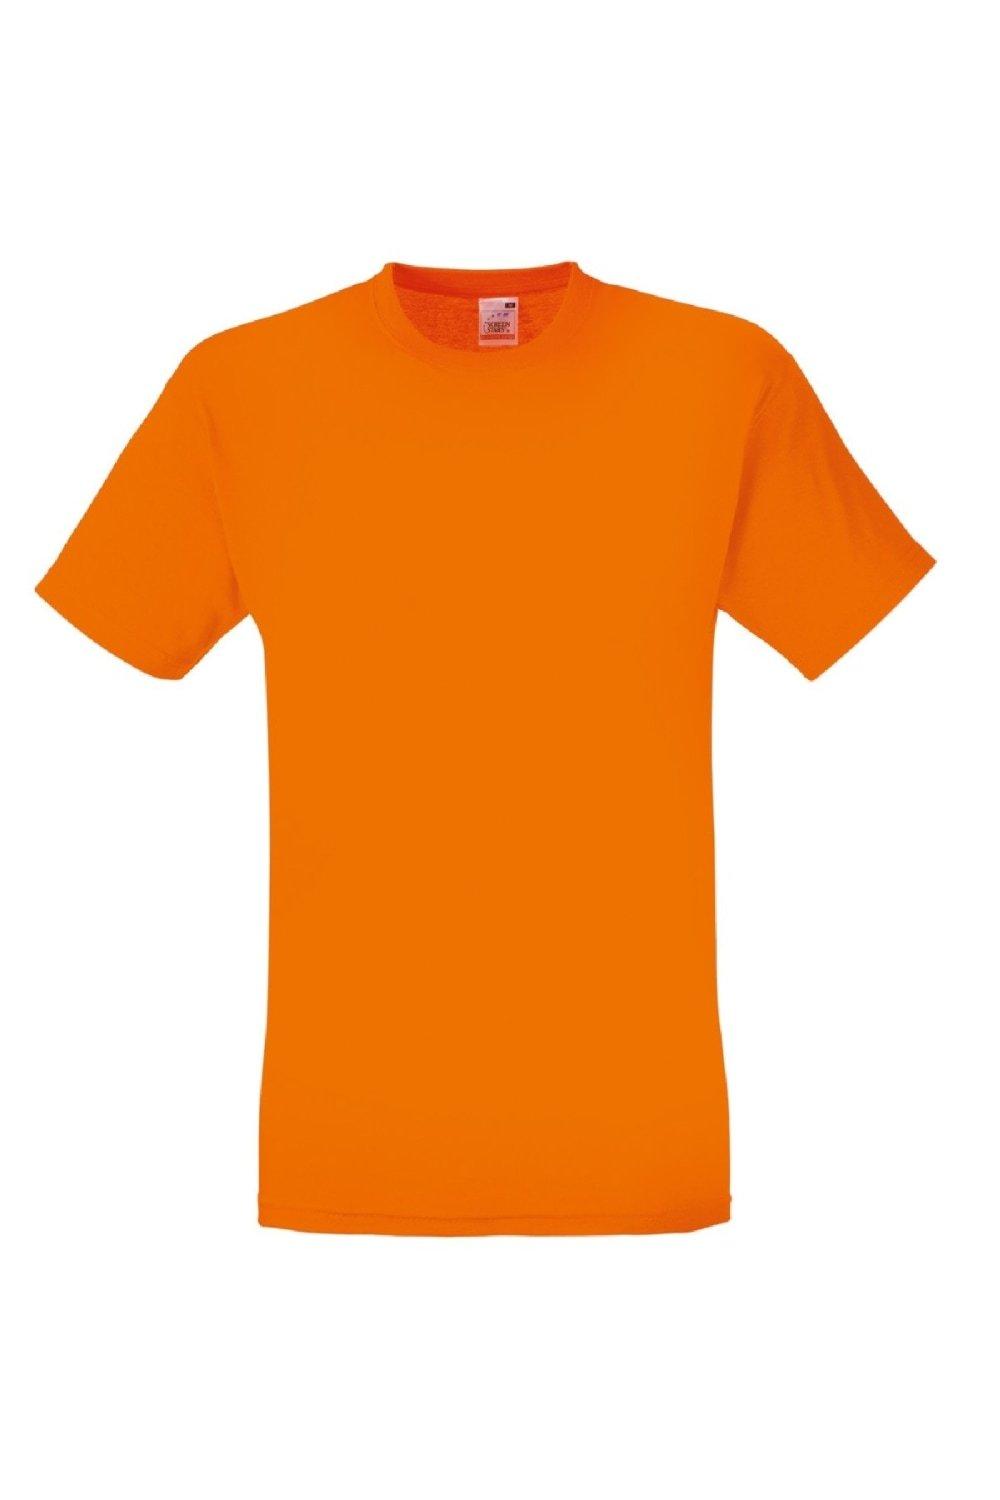 Оригинальная полноразмерная футболка Screen Stars с короткими рукавами Fruit of the Loom, оранжевый